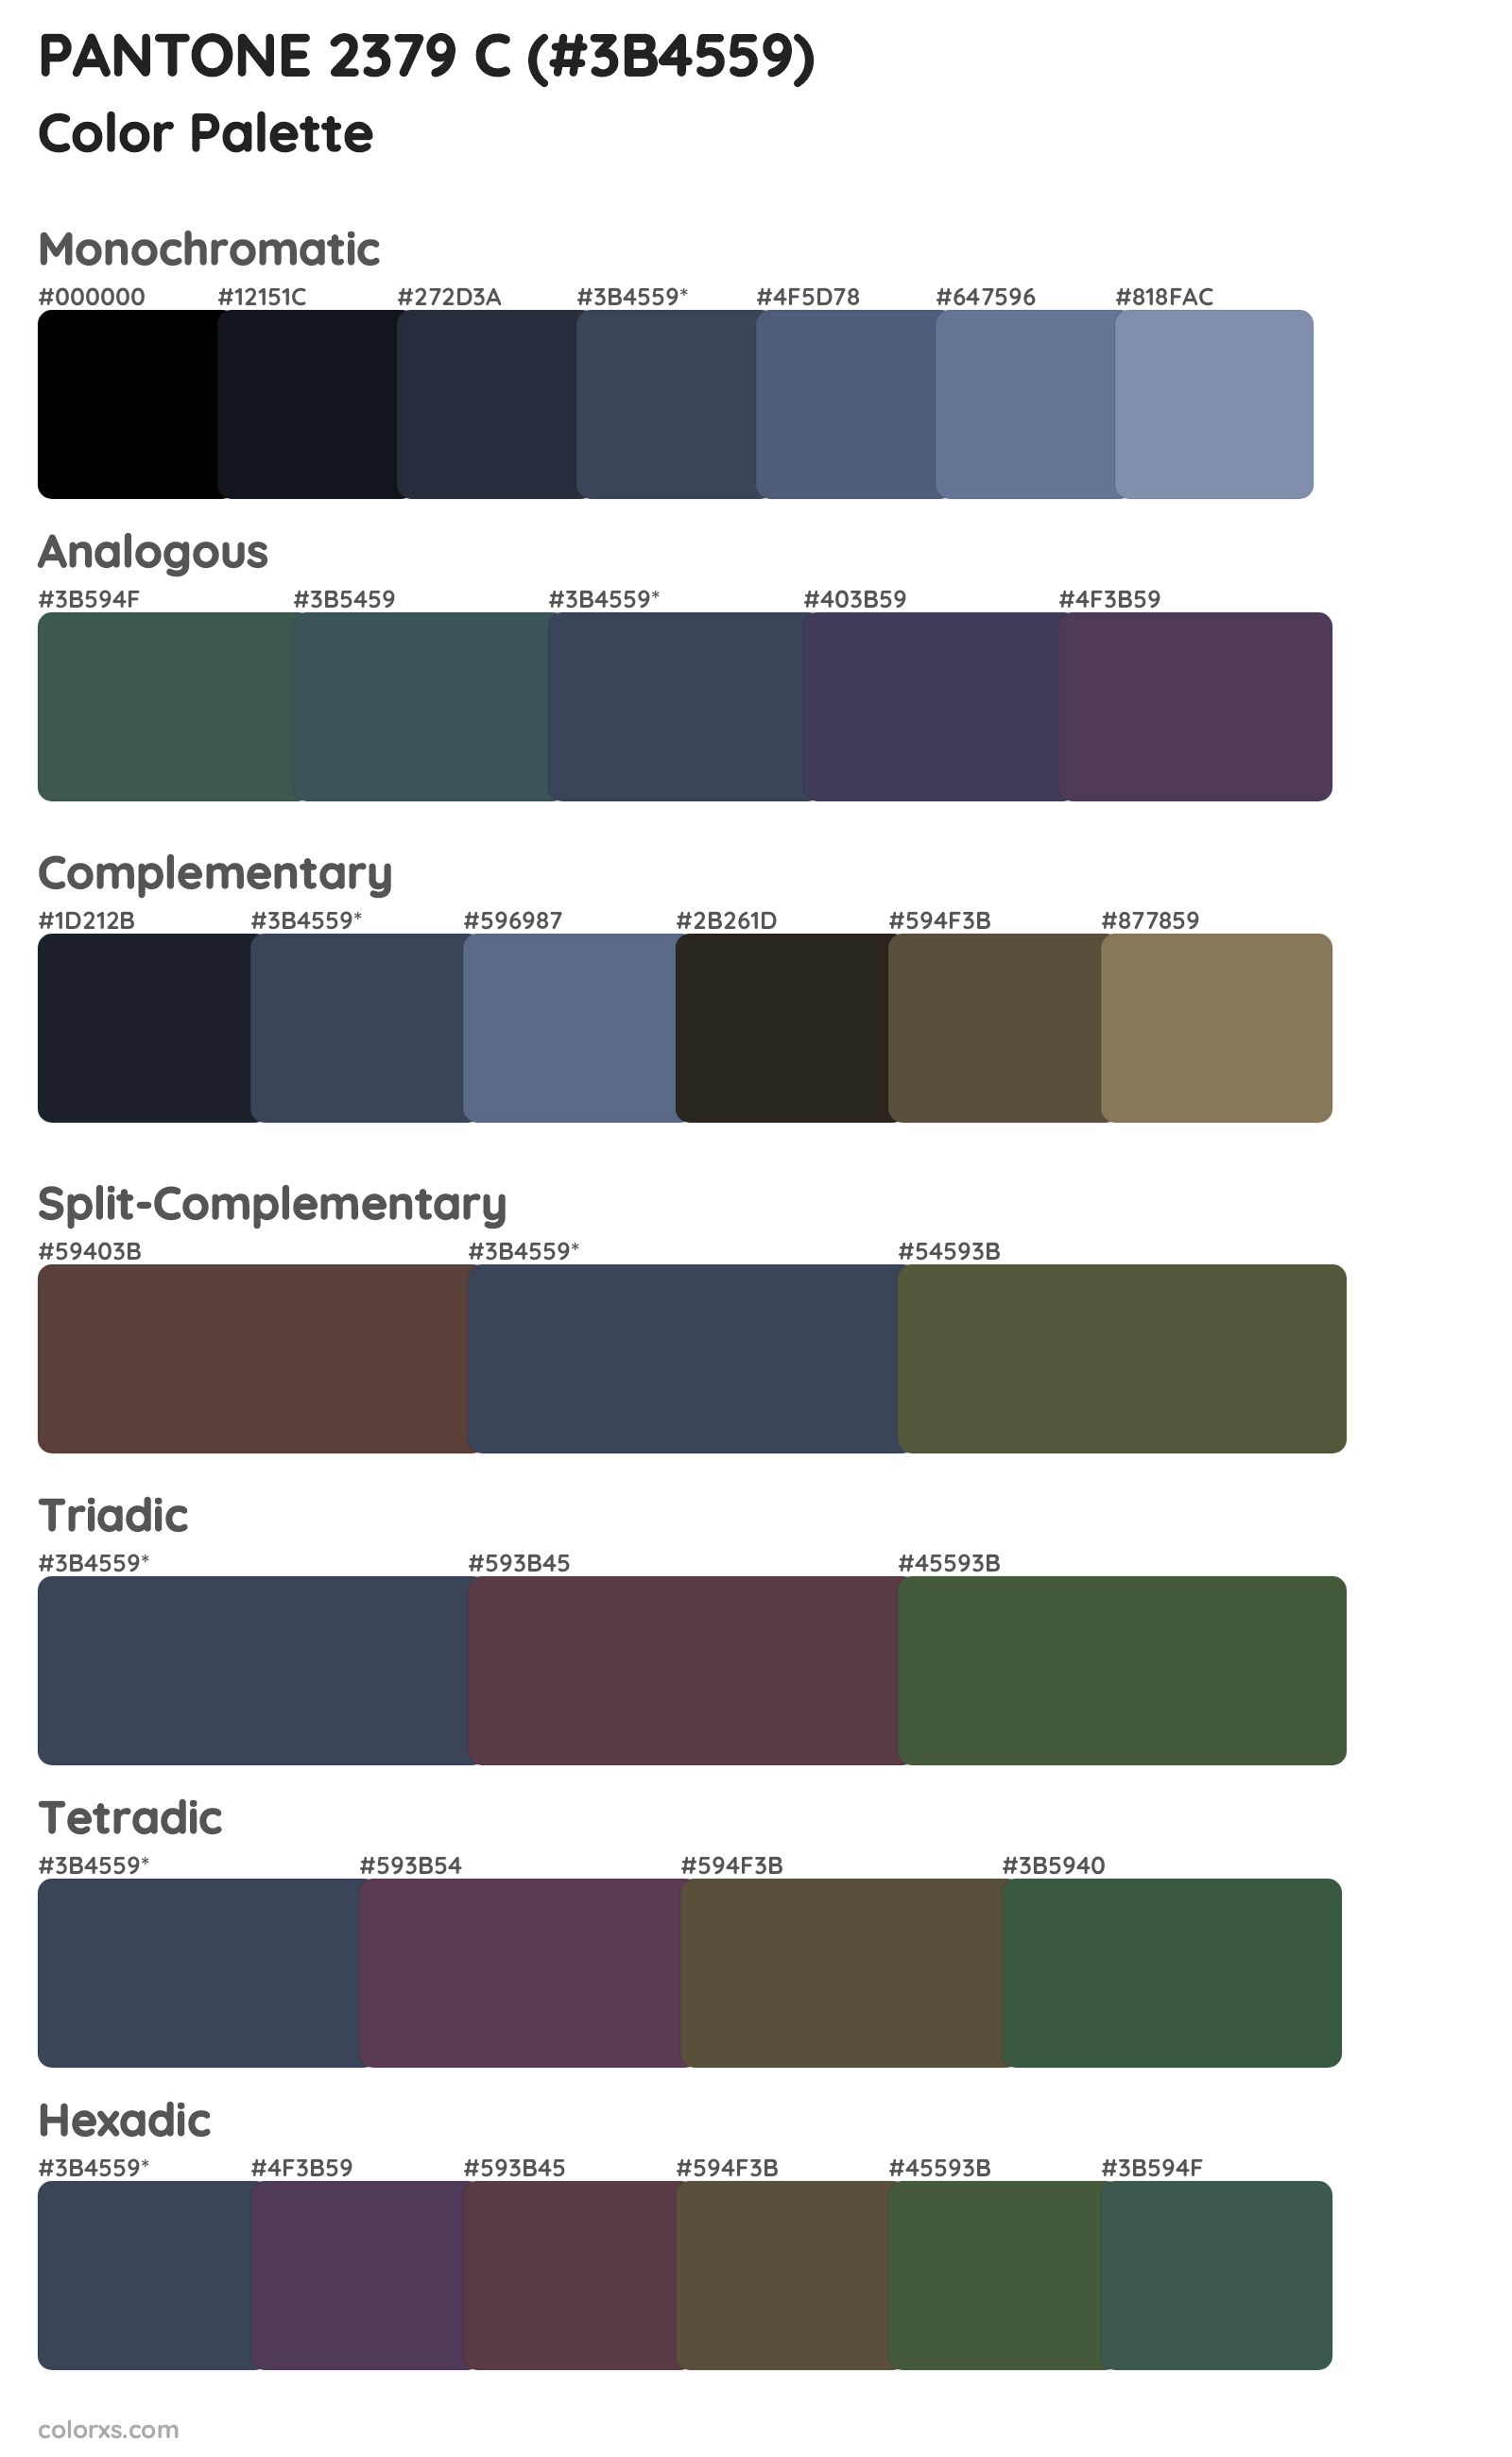 PANTONE 2379 C Color Scheme Palettes